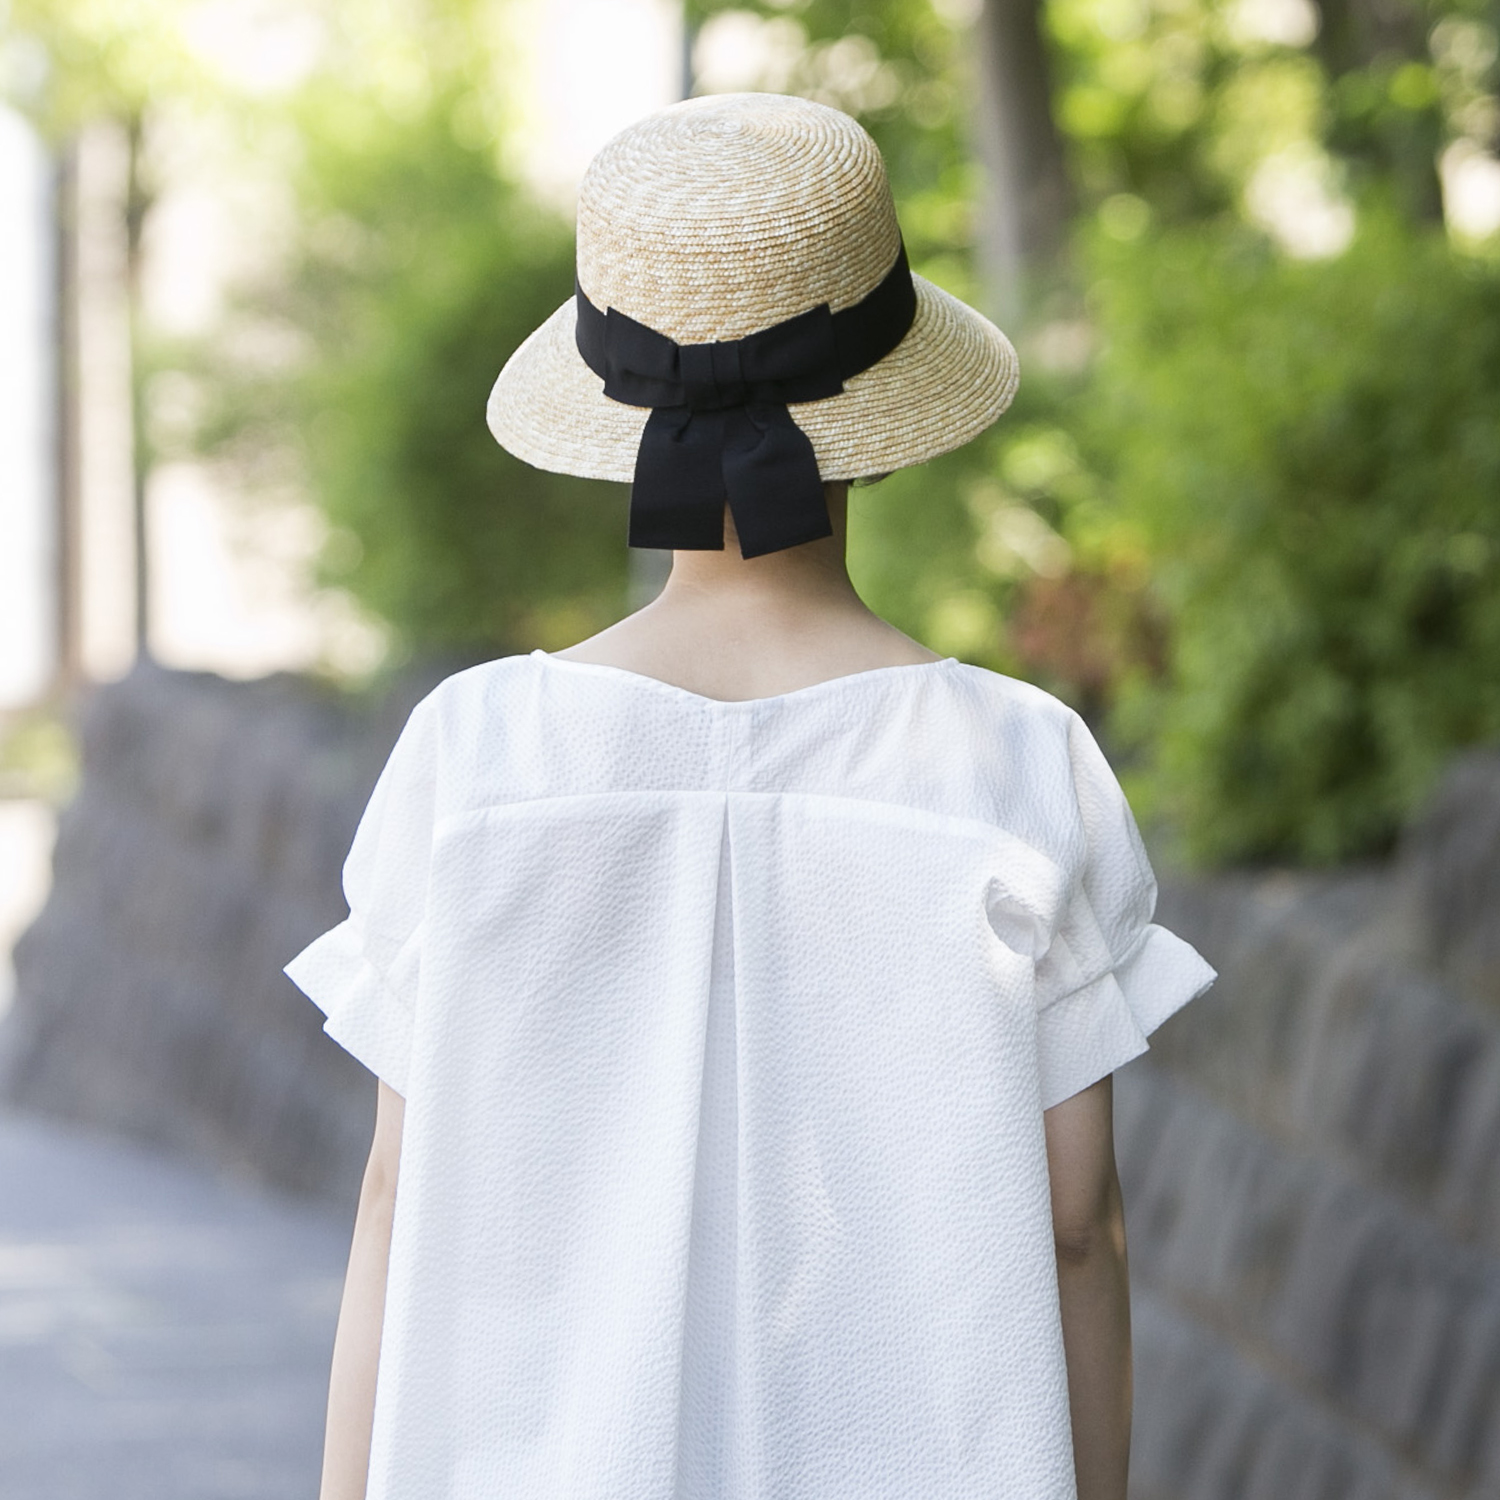 田中帽子店/国産の麦わら帽子 -美しく日差しを遮る麦わら帽子 - スタイルストア